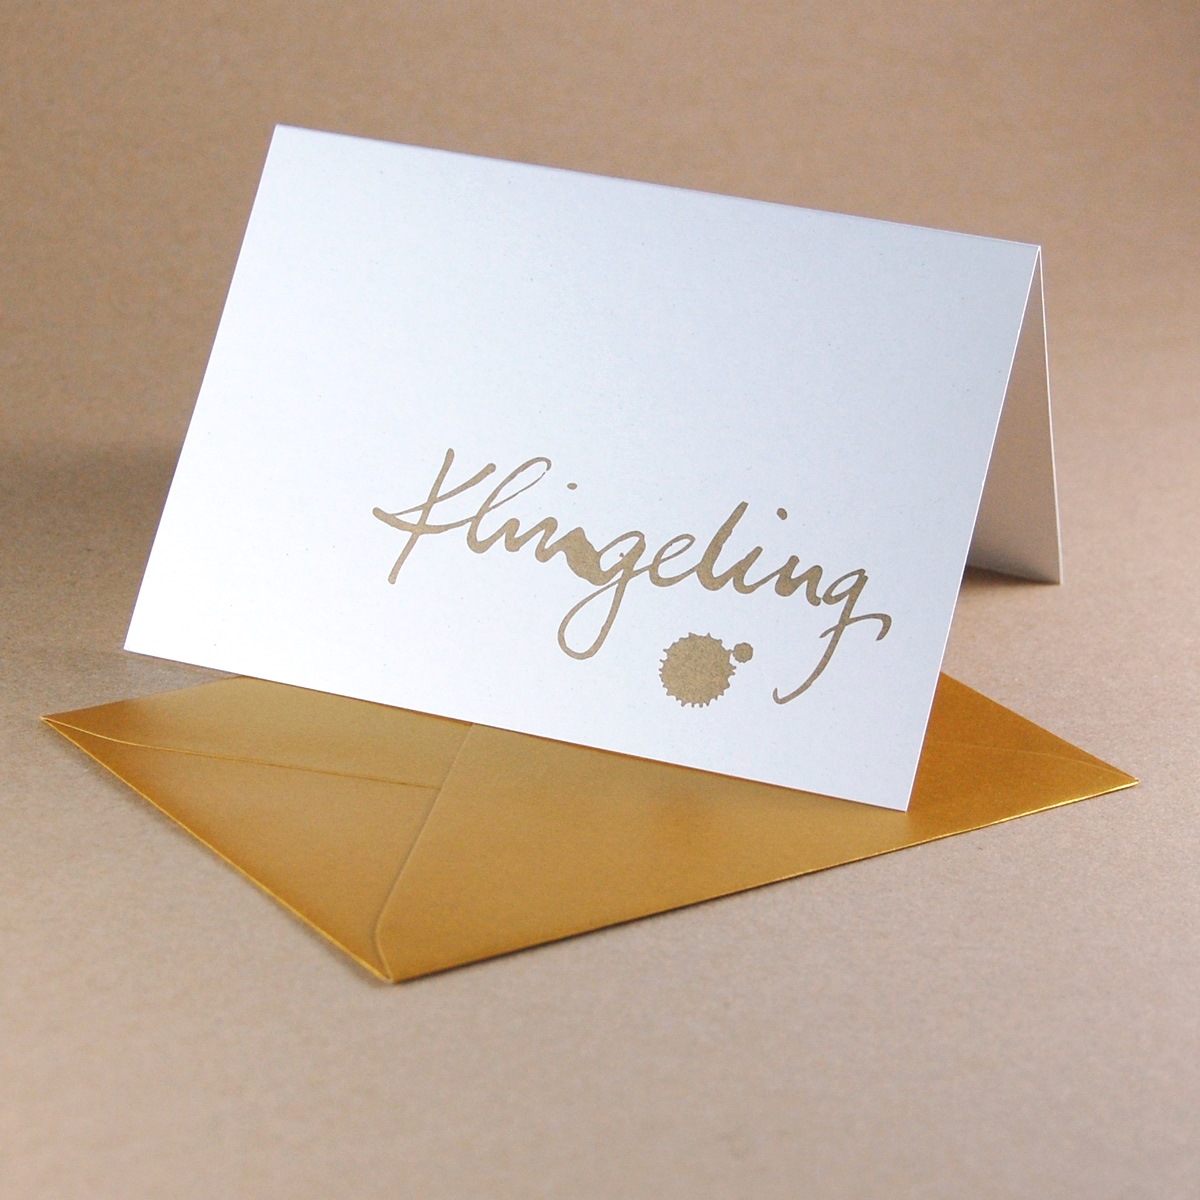 Klingeling, goldene Recycling-Weihnachtskarten mit edlem goldenen Umschlag